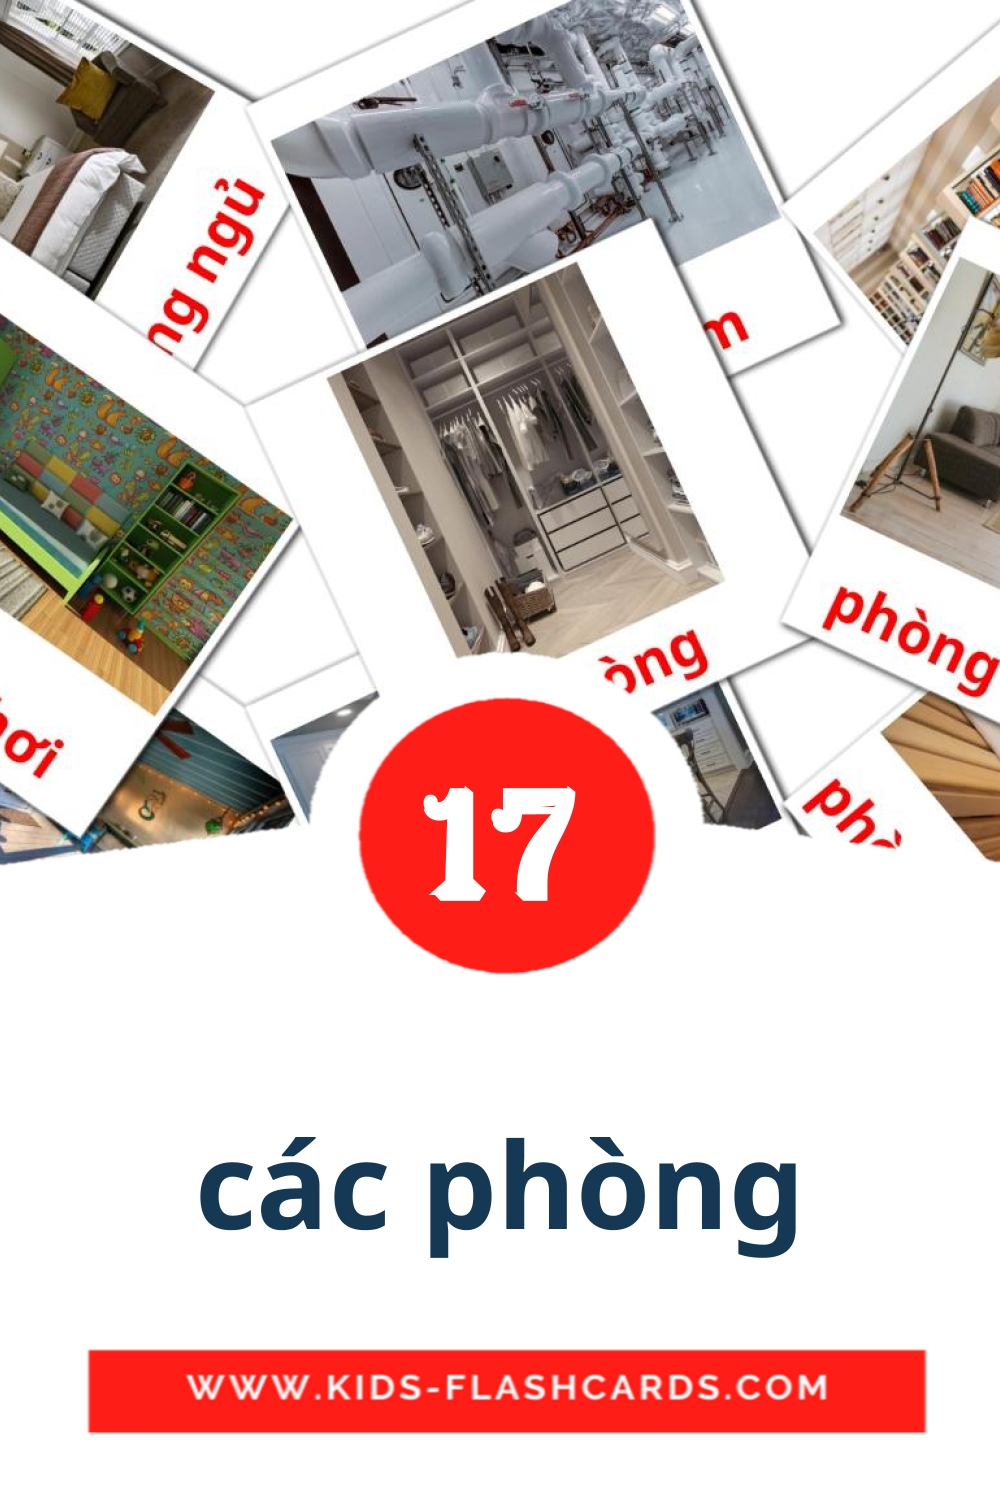 17 tarjetas didacticas de các phòng para el jardín de infancia en vietnamita